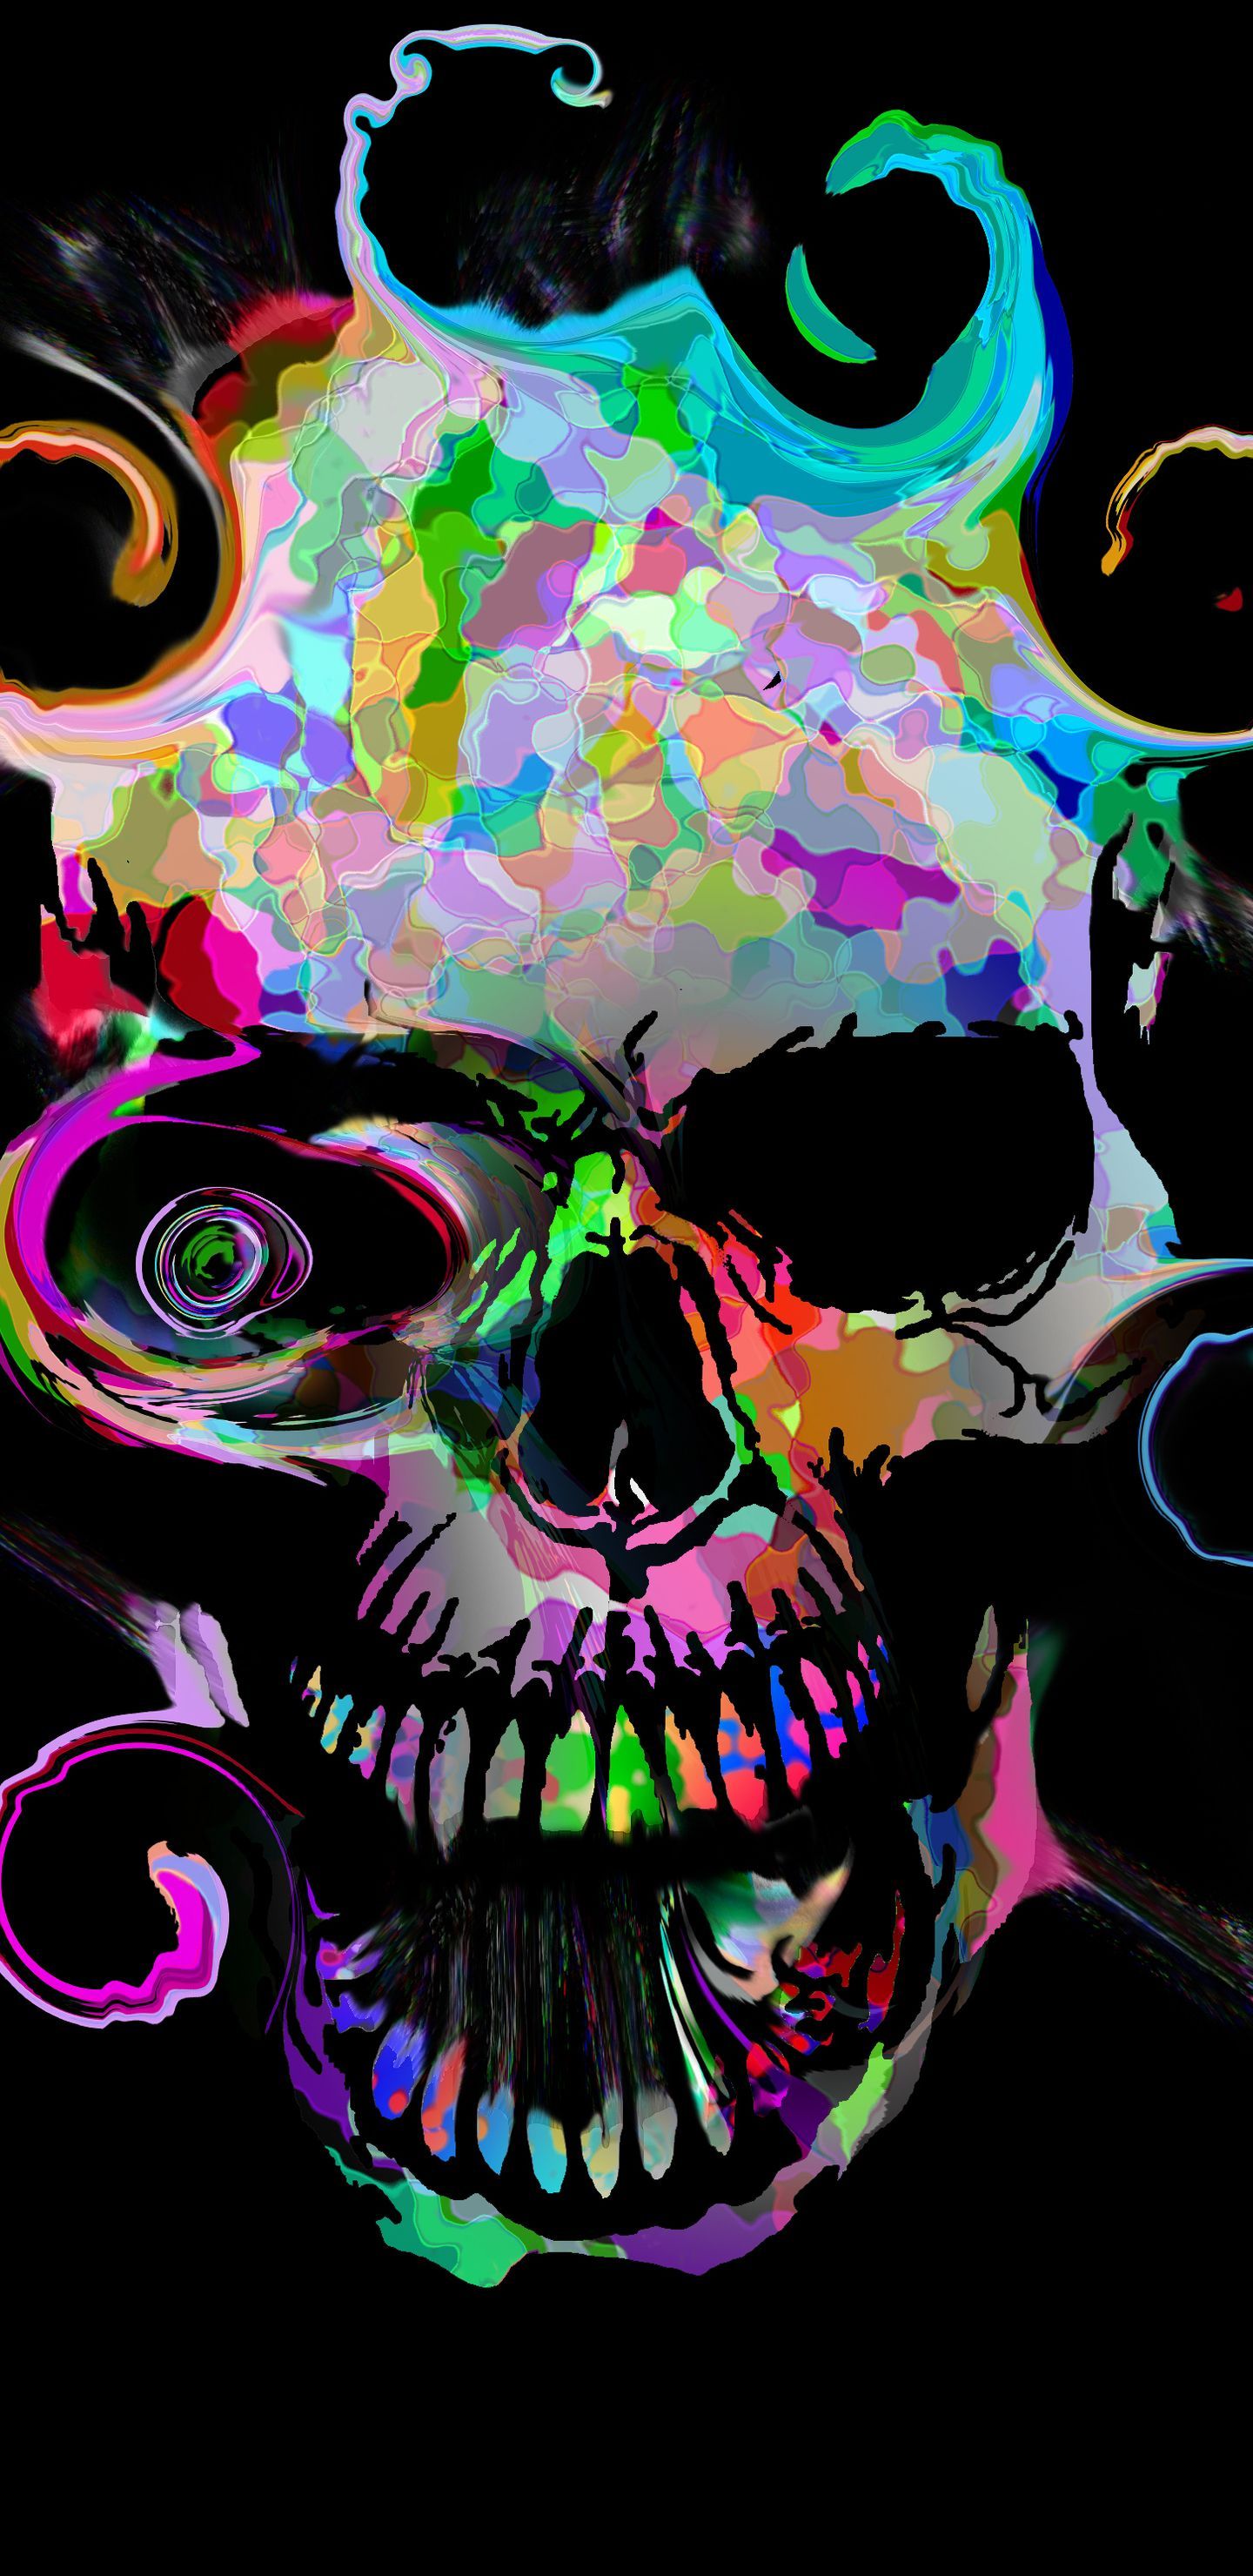 Skull Samsung Galaxy Wallpaper Free Skull Samsung Galaxy